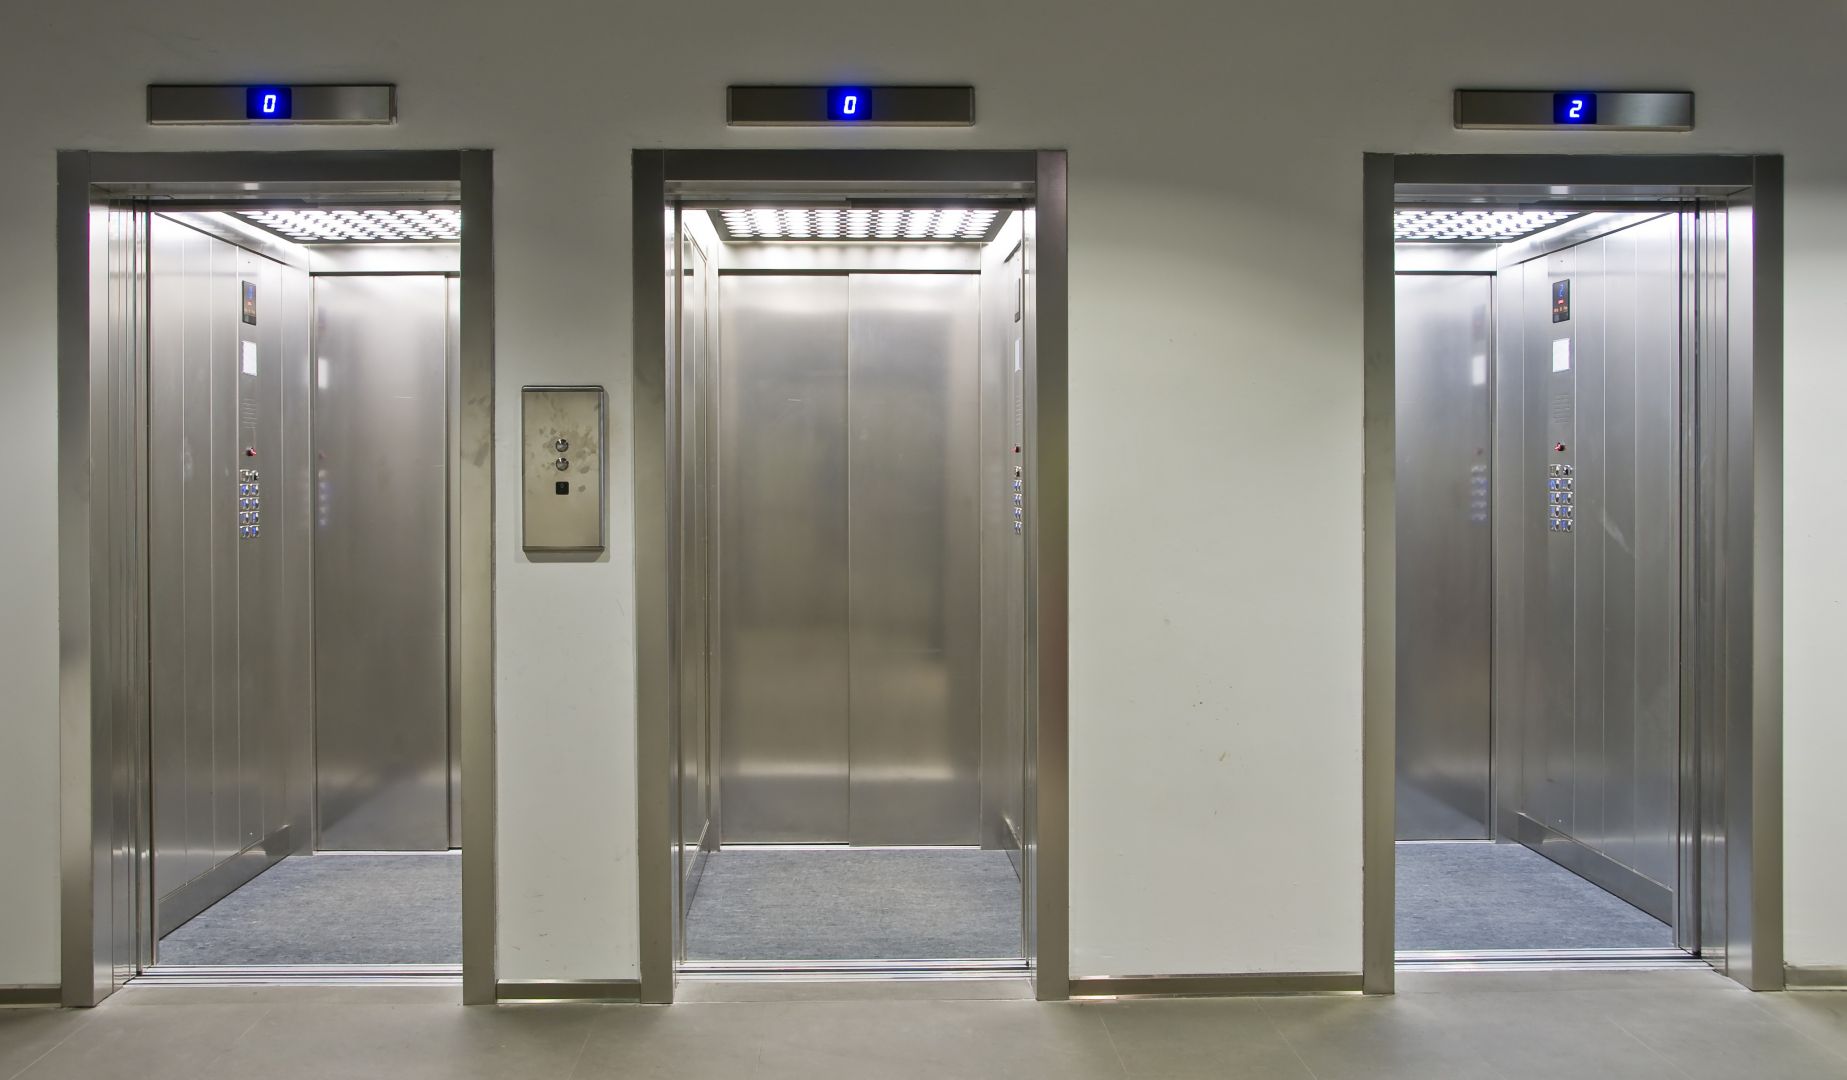 Poptávka na záložní zdroje výtahu (Výtahy a servis) - Sokolov